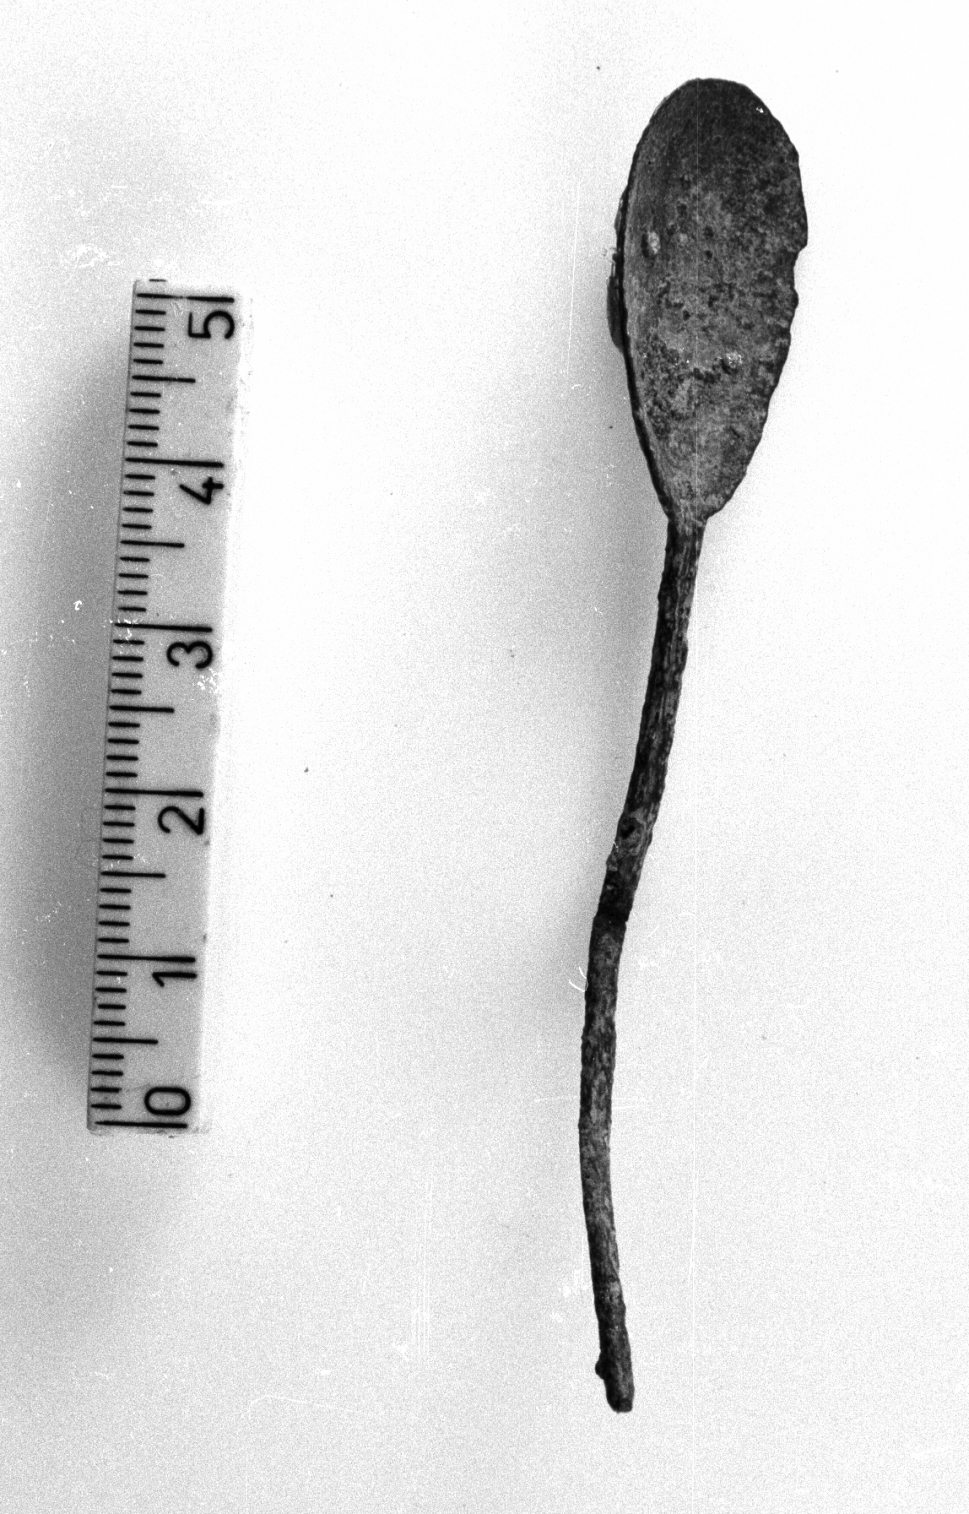 cucchiaino (secc. II a.C. - V d.C)